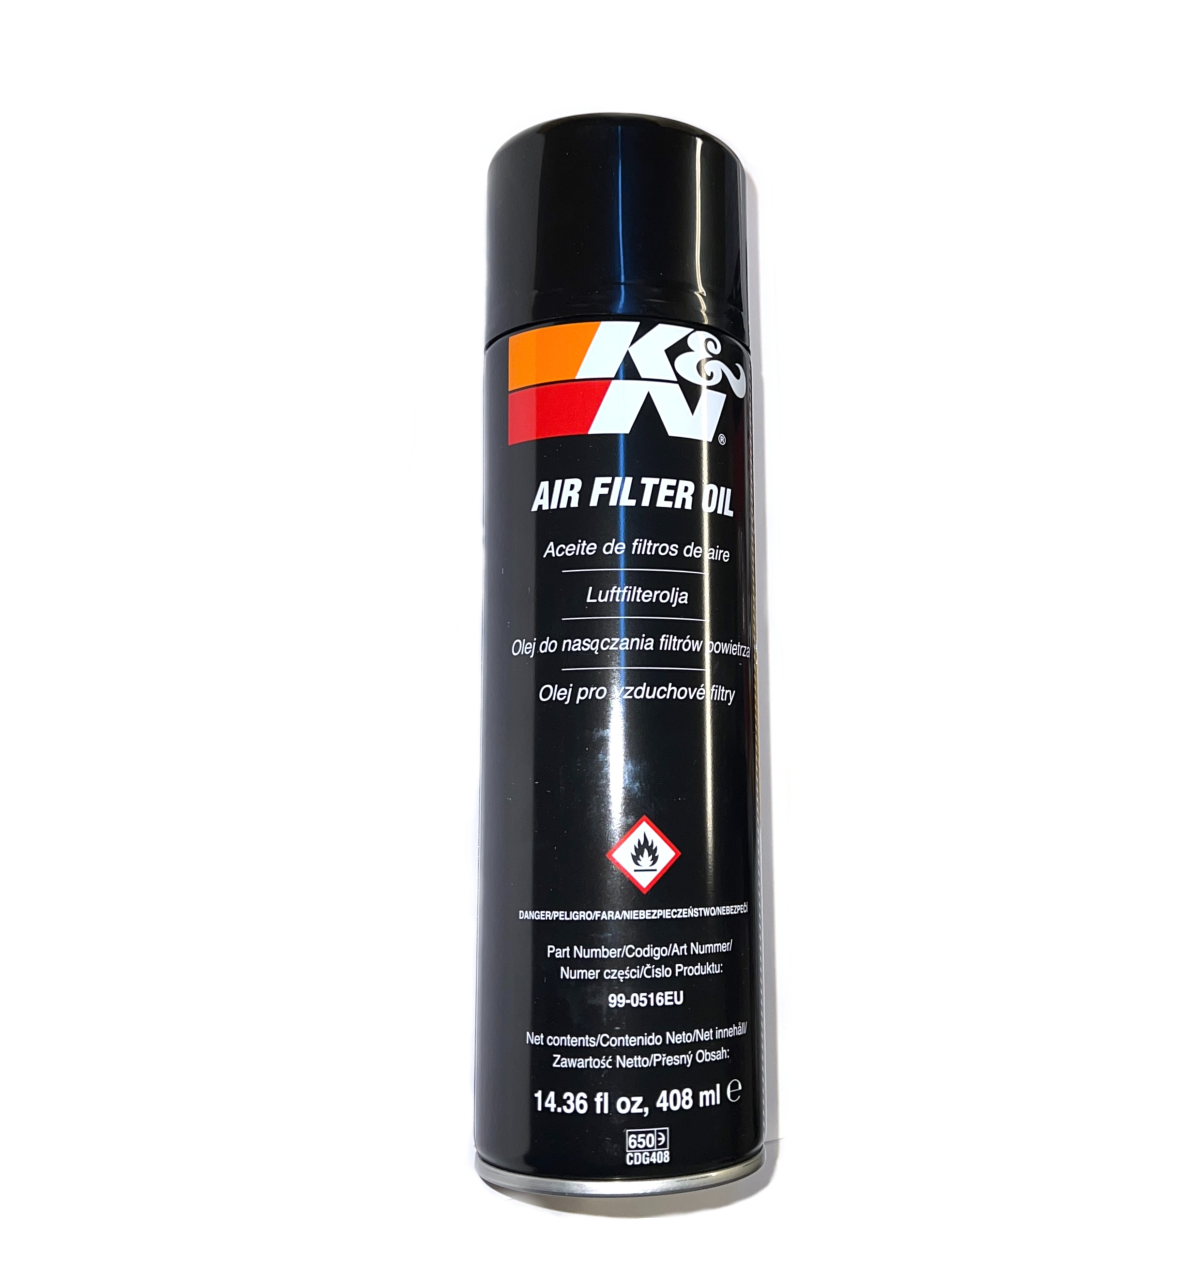 K&N filterspray 408ml. Filterolja  filterspray till K&N luftfilter